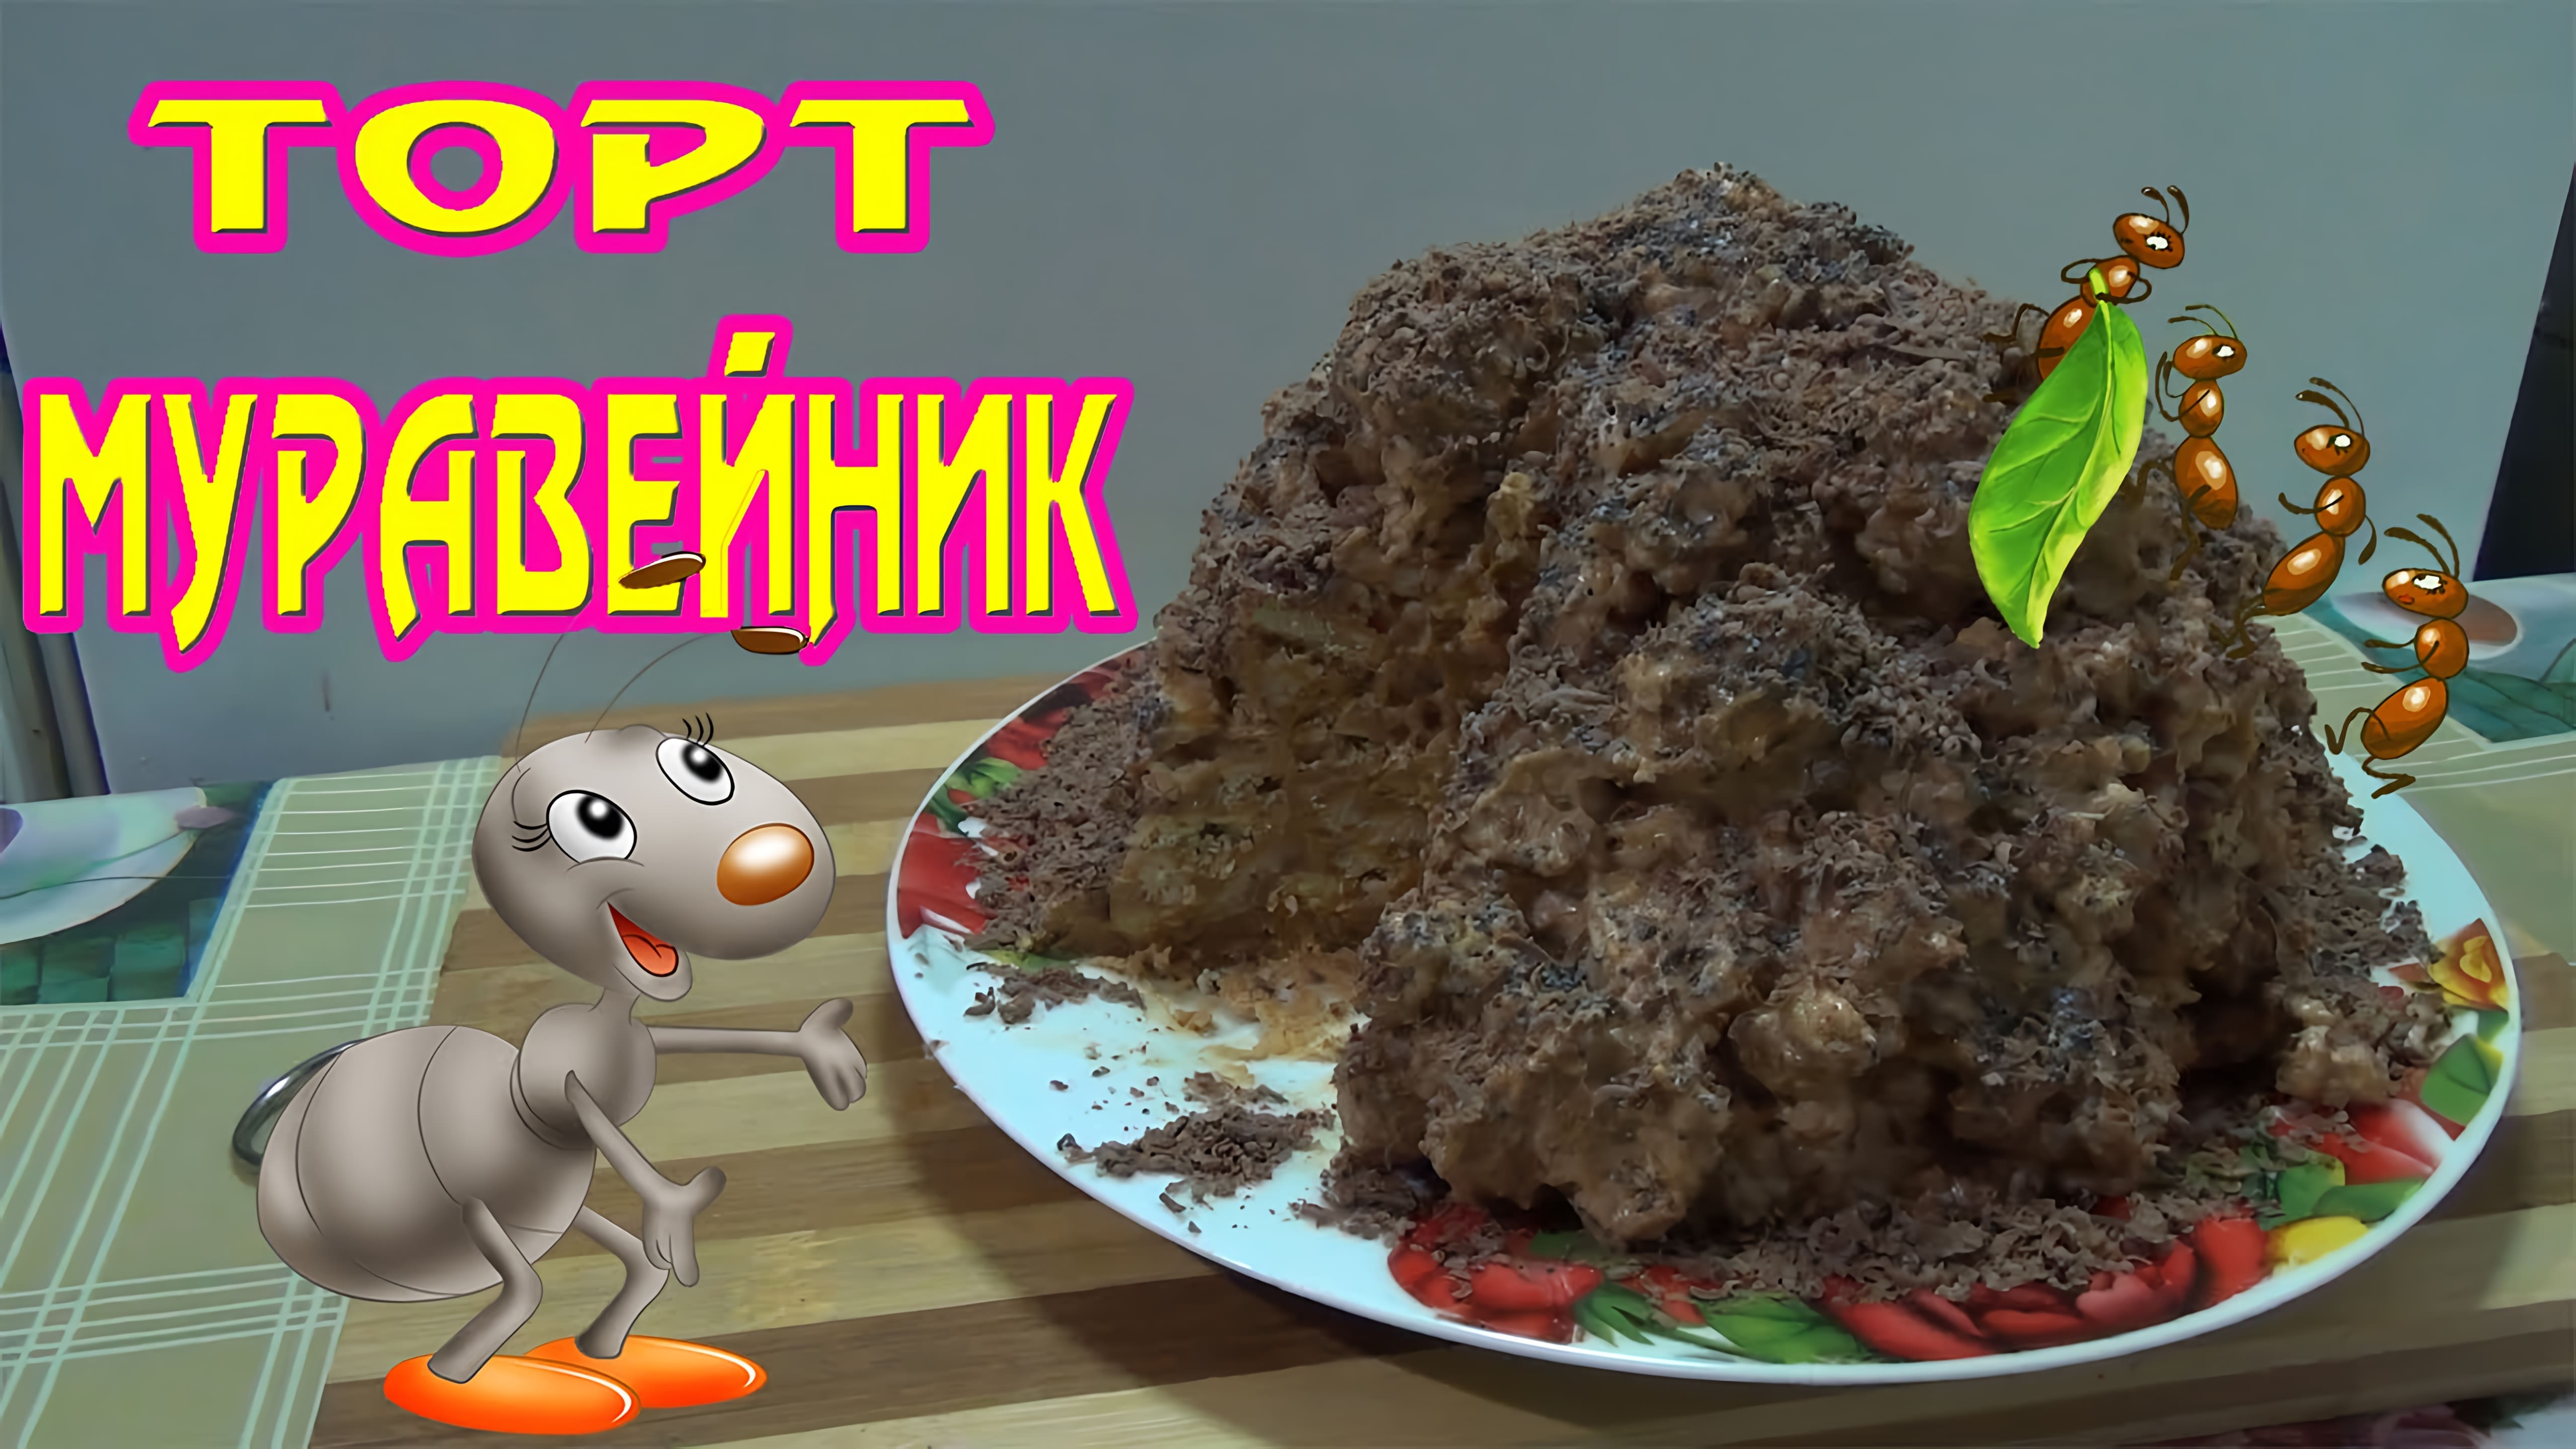 Видео: Вкусный и простой рецепт торта муравейник без выпечки.